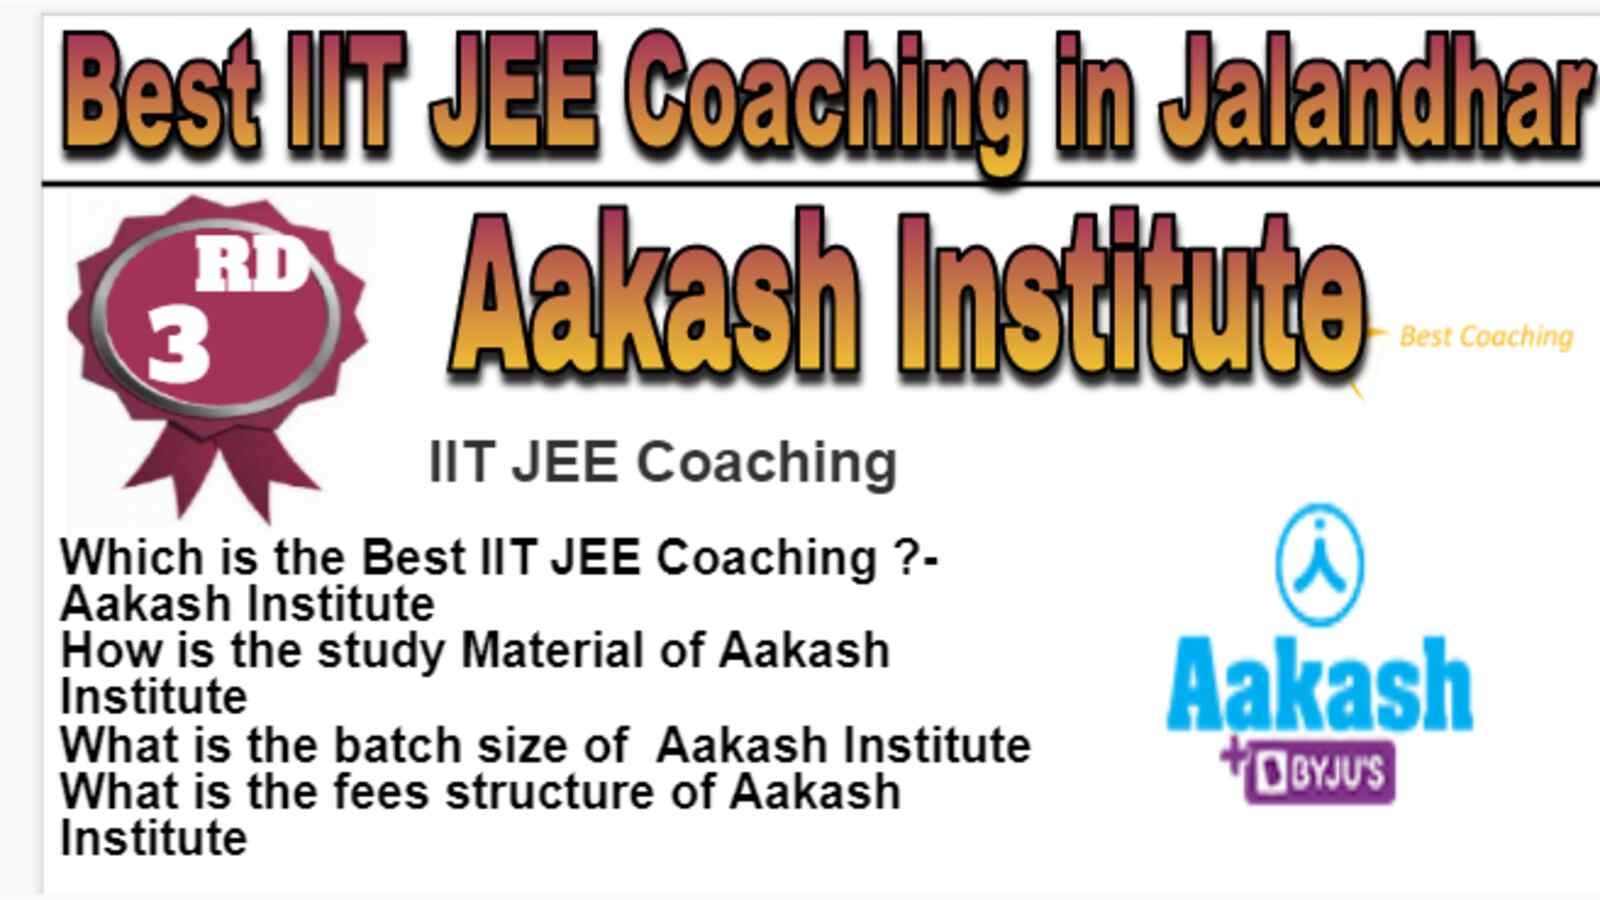 Rank 3 Best IIT JEE Coaching in Jalandhar